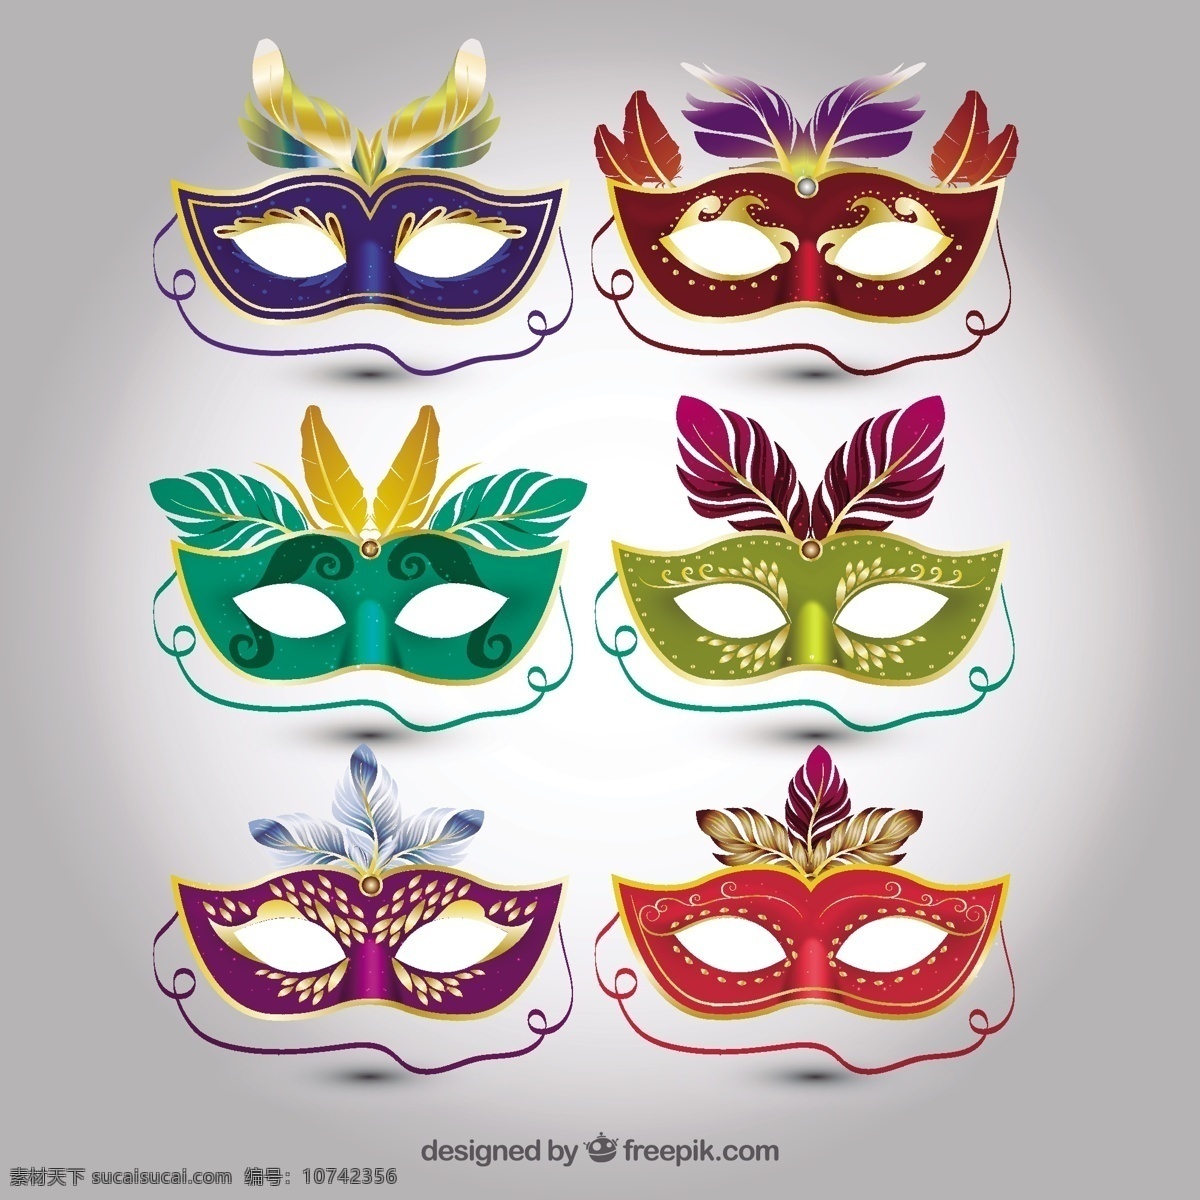 缤纷 羽毛 面具 聚会 庆祝 节日 丰富多彩 事件 狂欢节 节 装饰 巴西 假面舞会 娱乐 文体 狂欢节面具 现实 神秘的面具 威尼斯